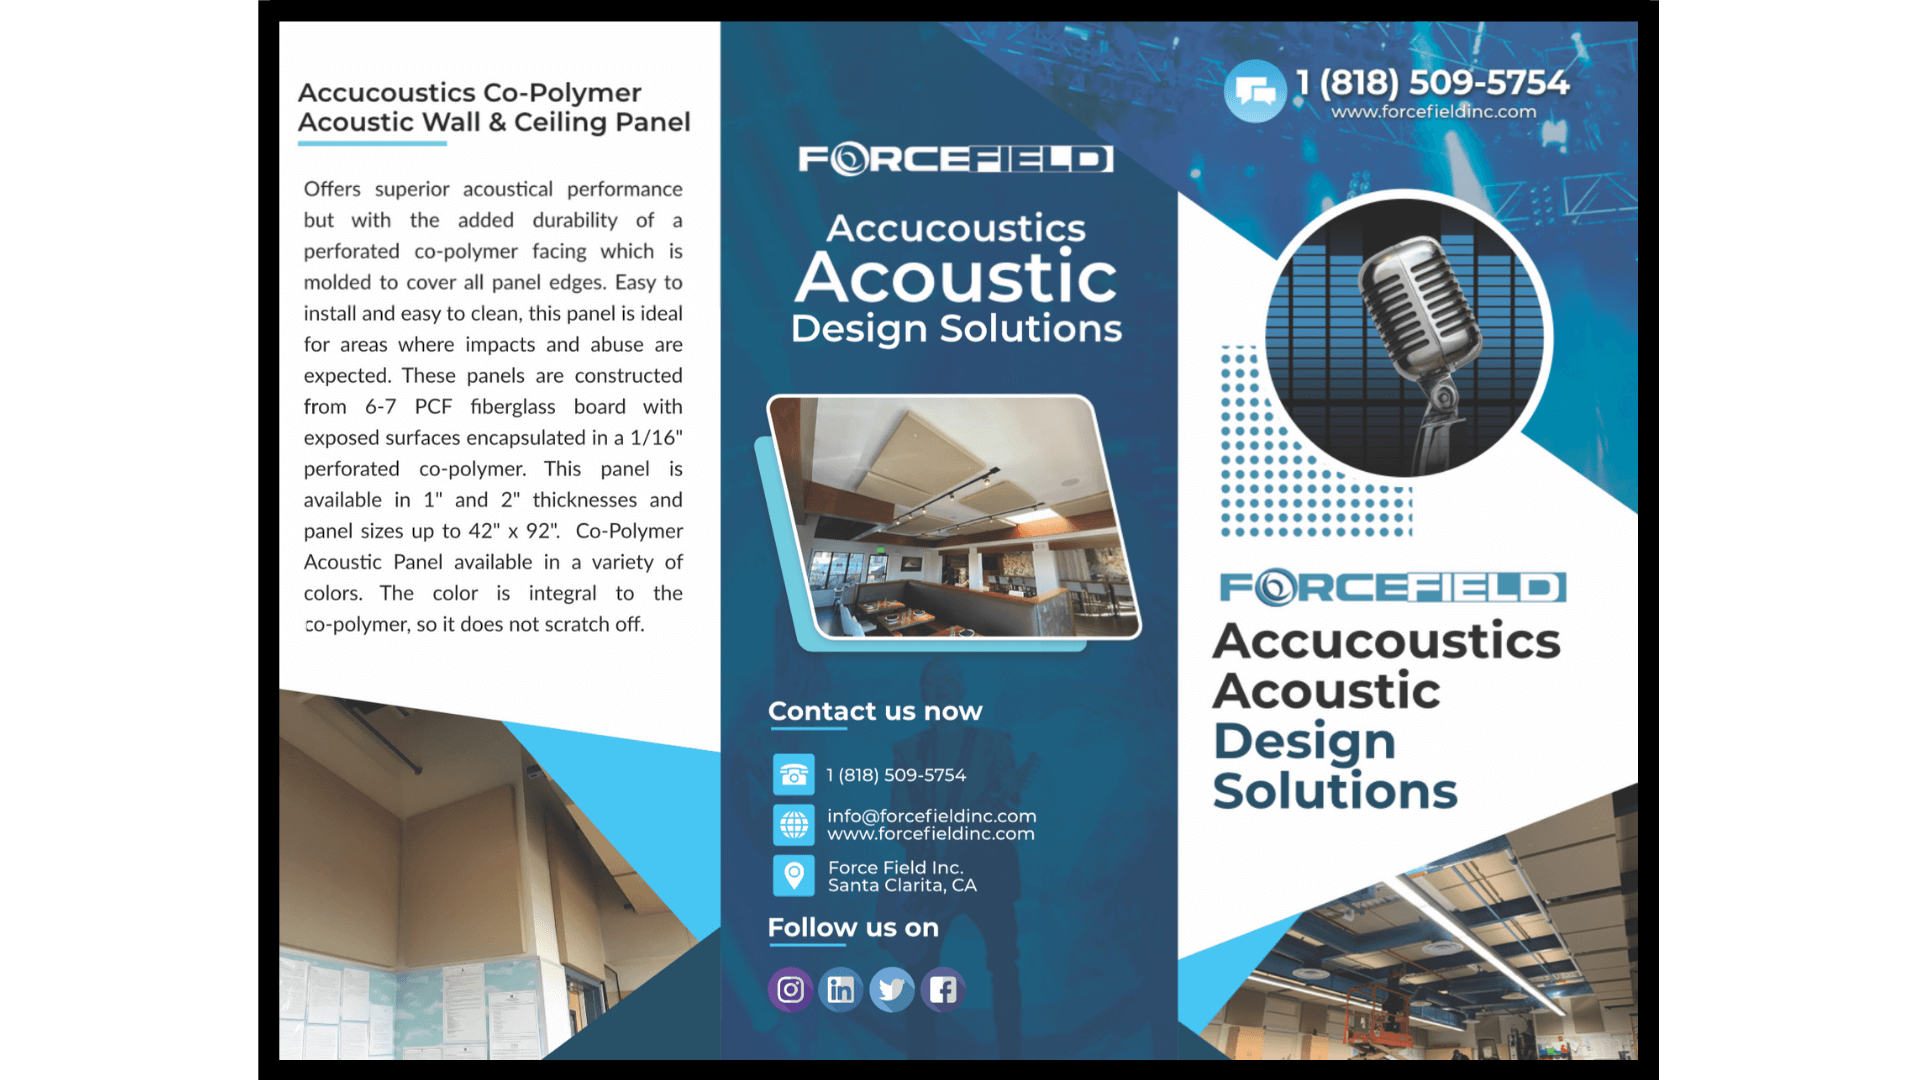 Accucoustics Acoustic Design Solutions